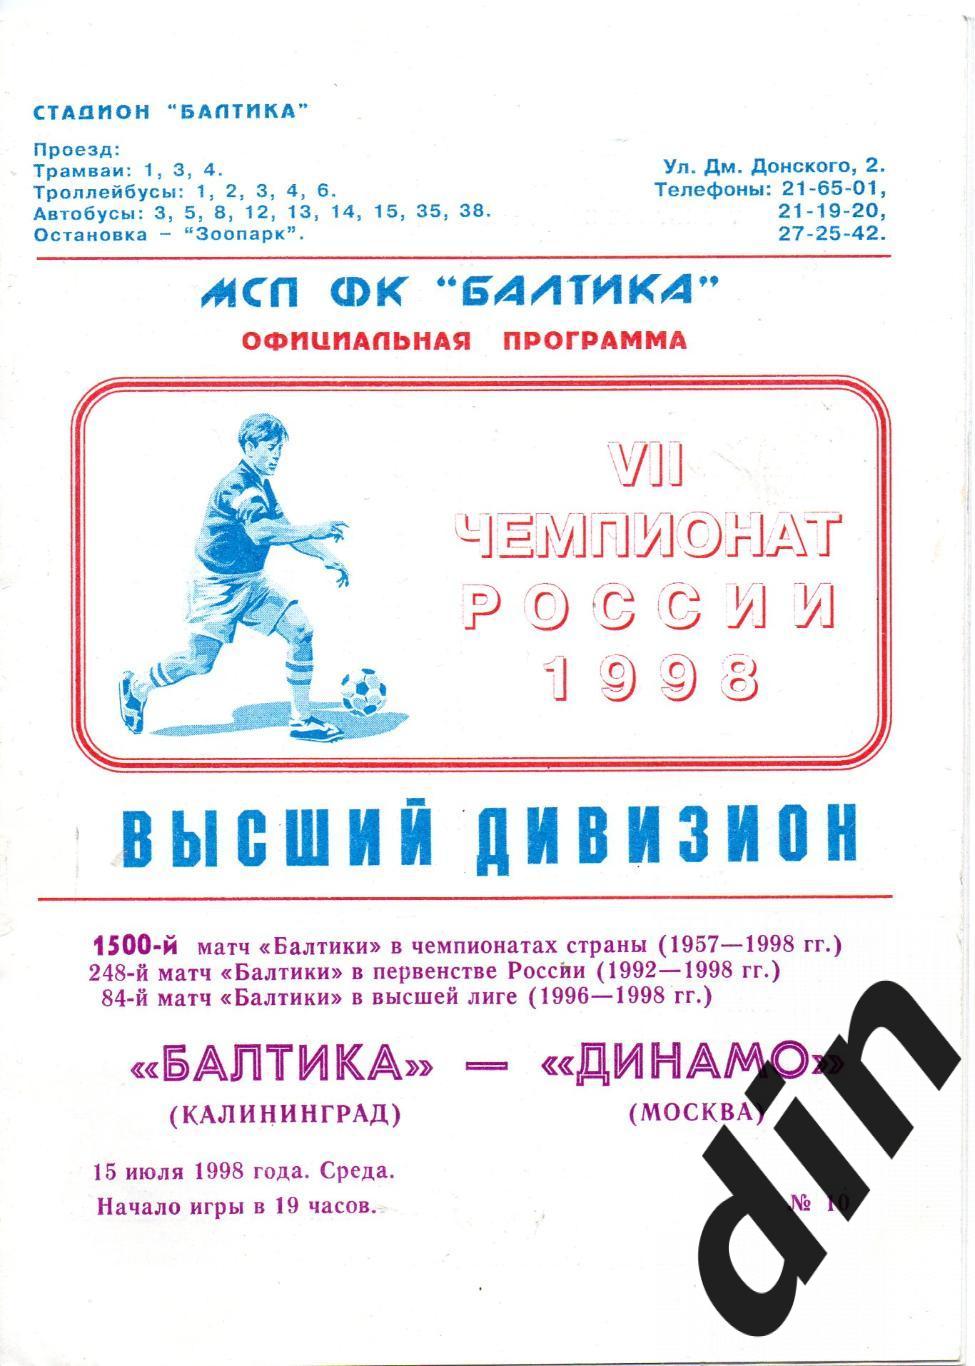 Балтика Калининград - Динамо Москва 15.07.1998